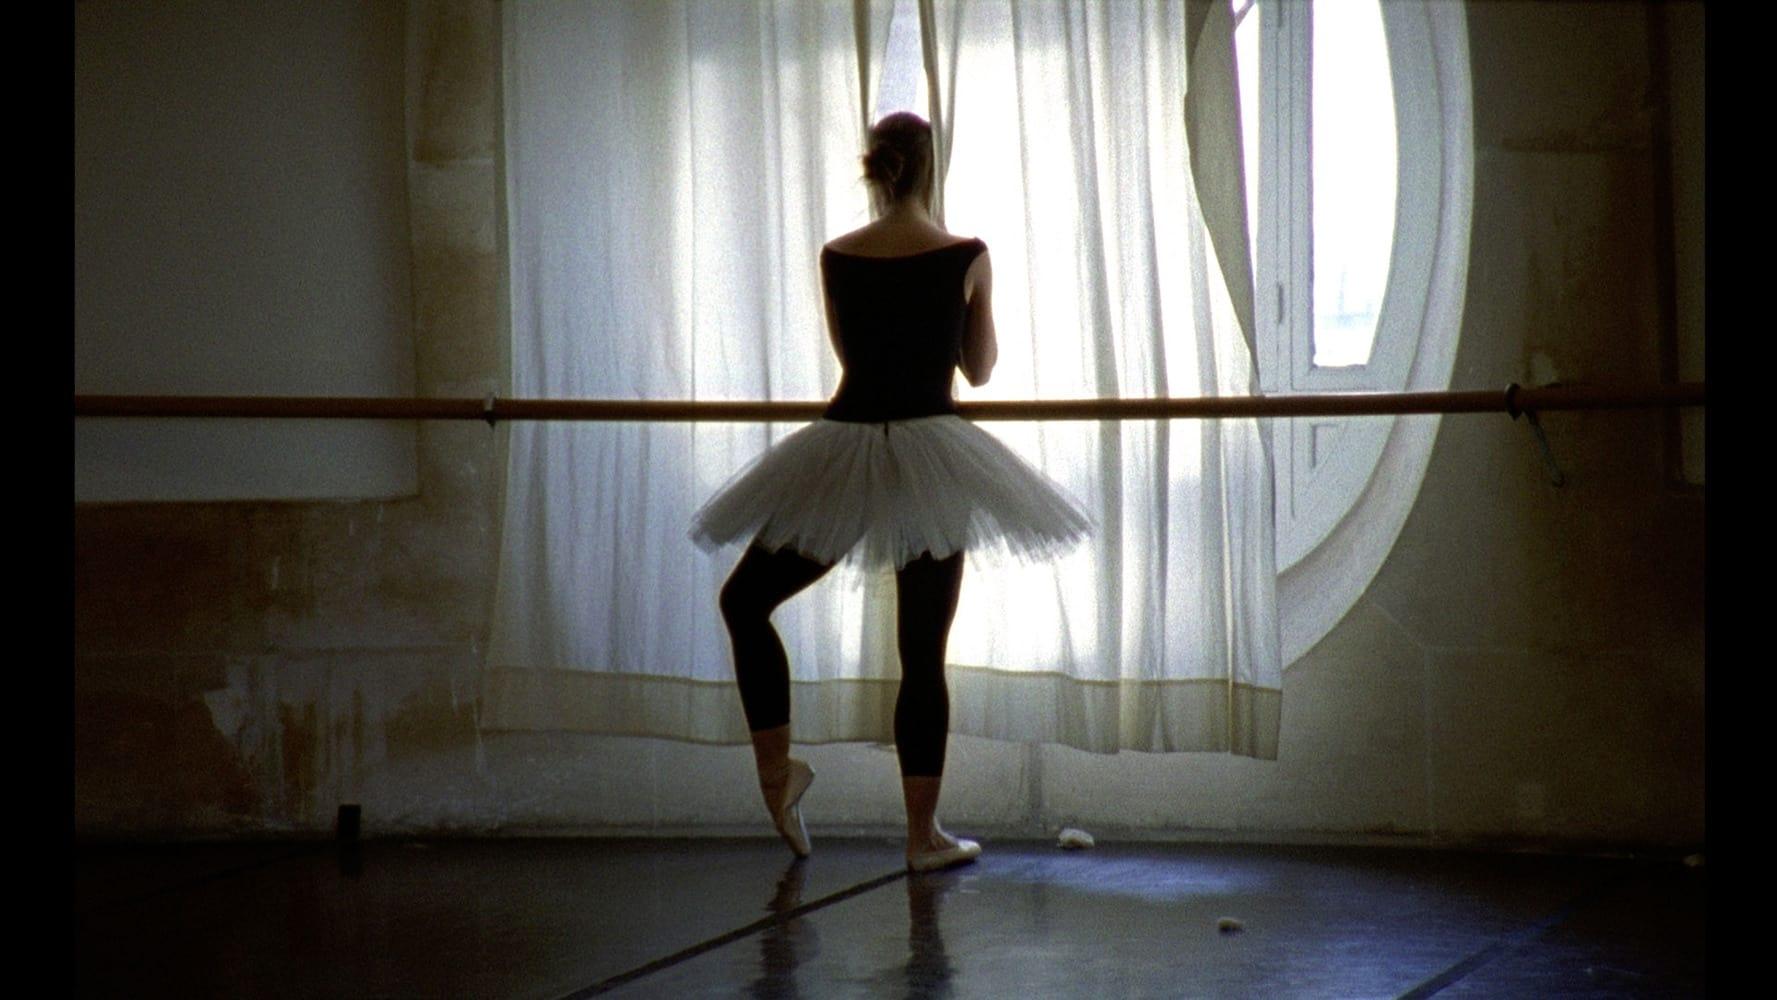 La Danse: The Paris Opera Ballet backdrop